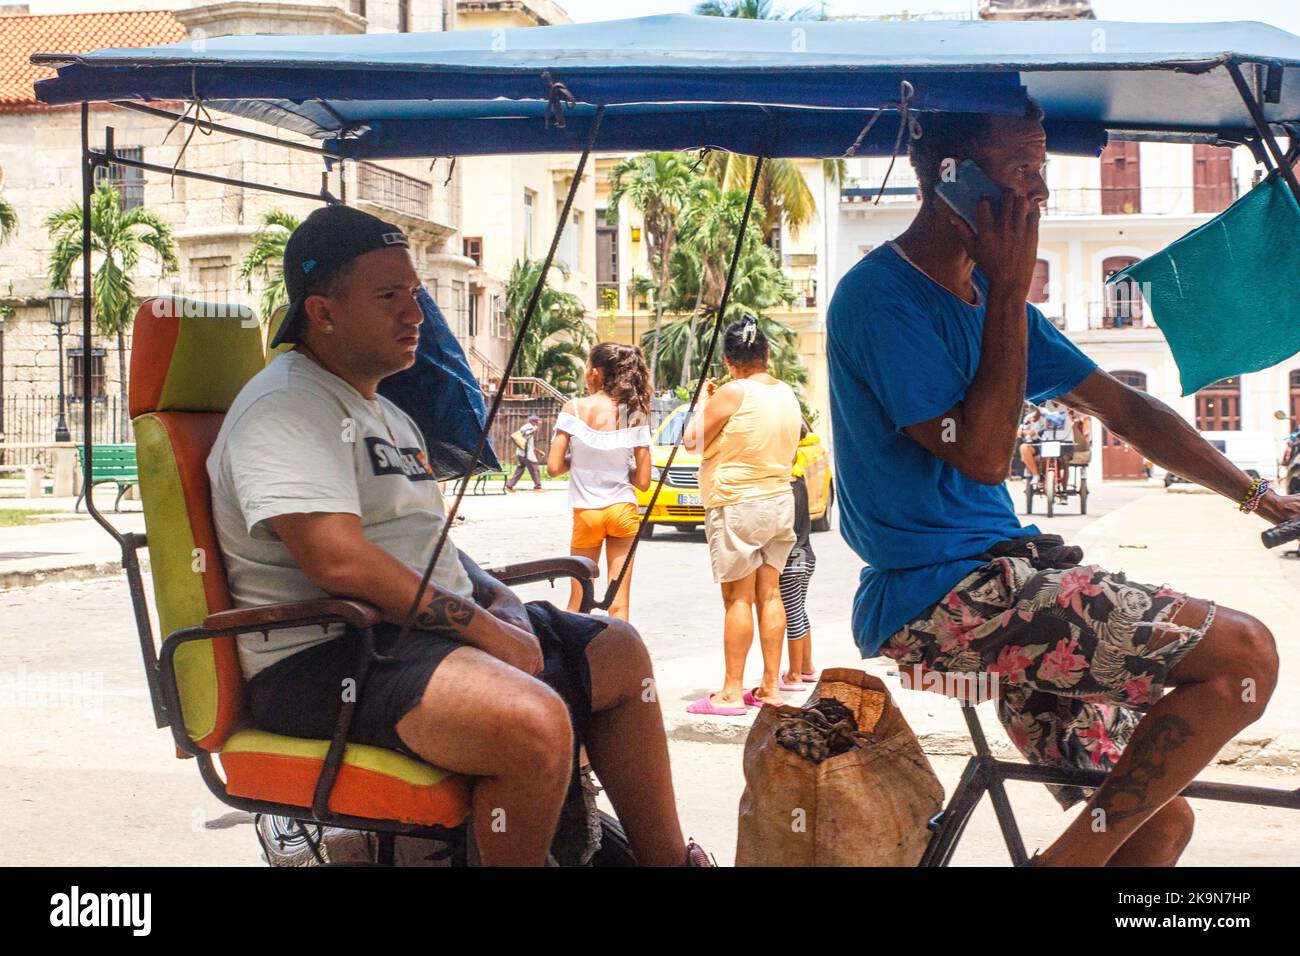 Ein junger Mann trägt einen Beutel mit Ananas in einem Pediküre oder Bicitaxi. Der Fahrer des Fahrzeugs spricht auf einem Smartphone. Stockfoto